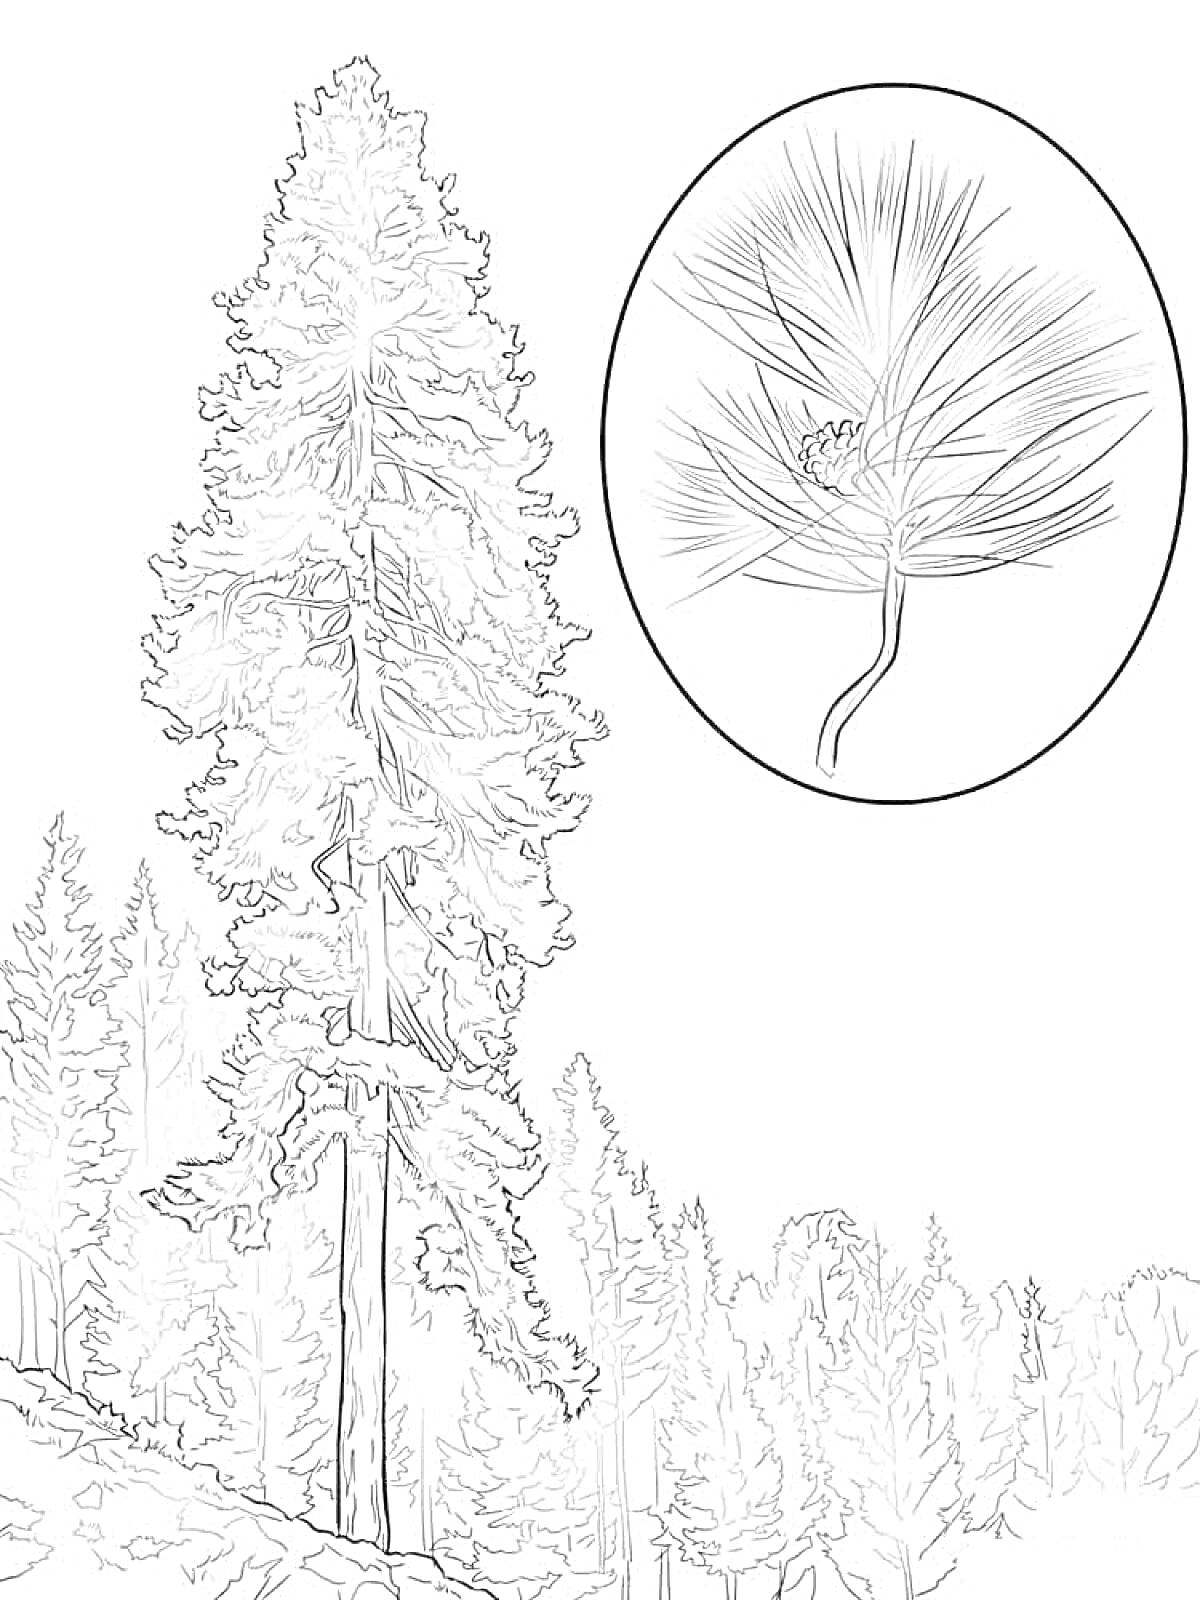 Раскраска Высокое дерево на склоне с видом на лес и увеличенным изображением хвои